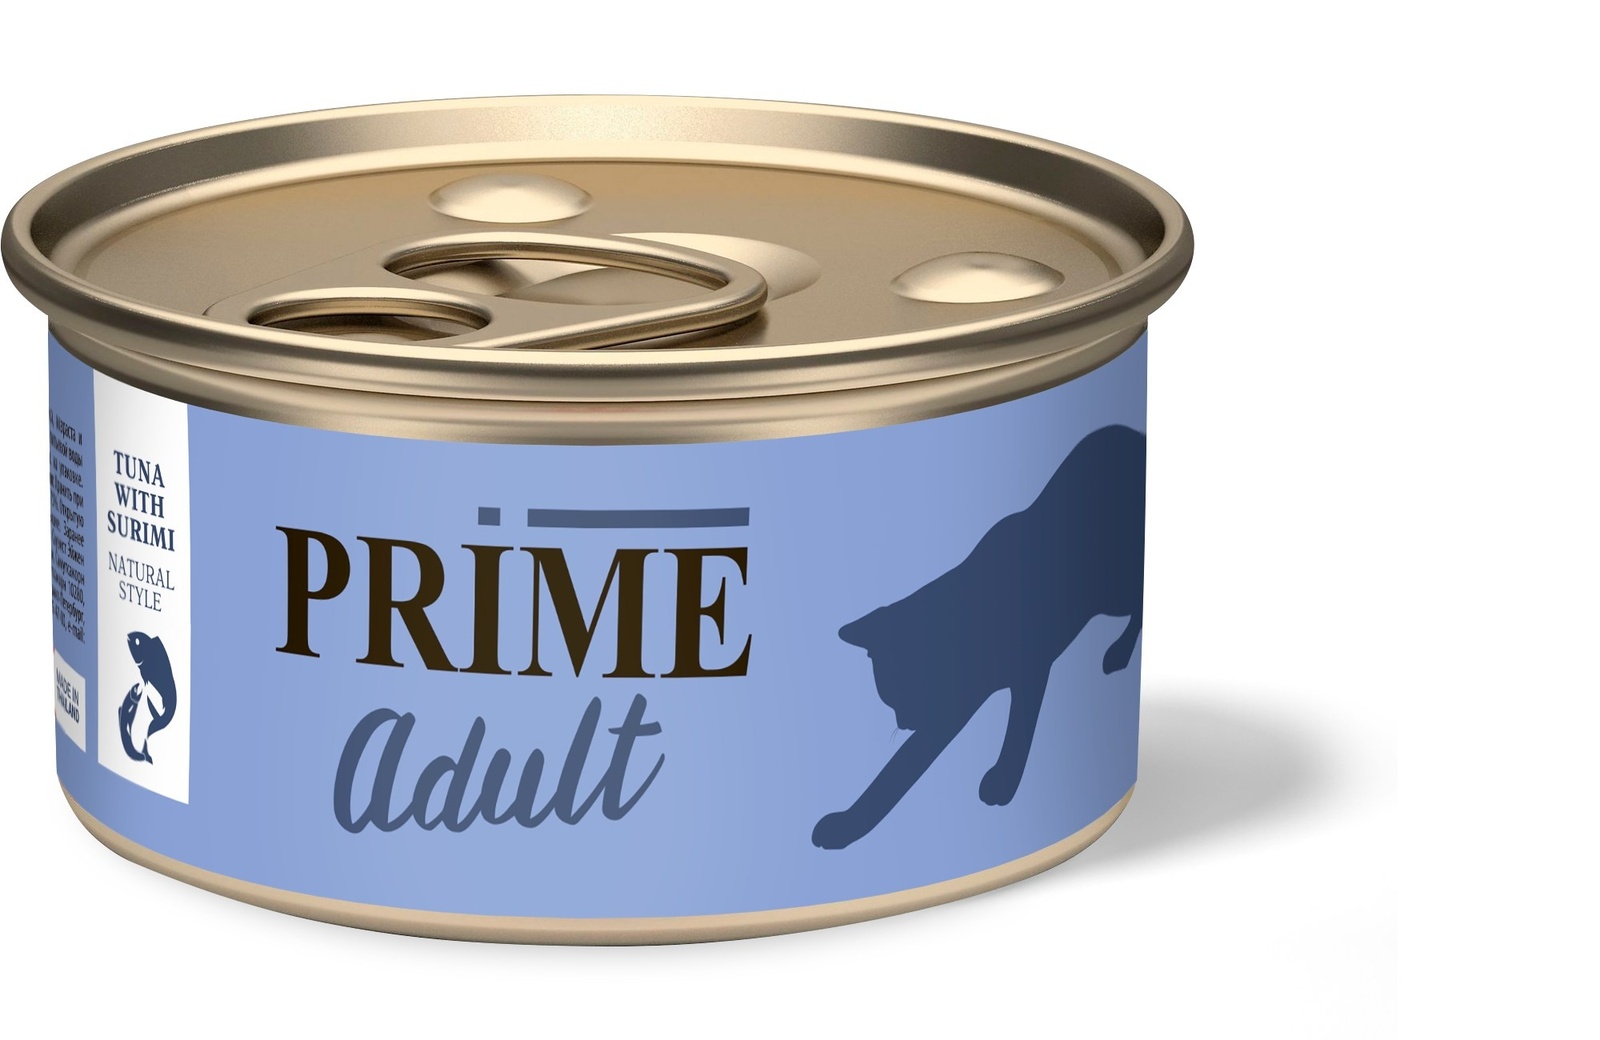 Prime Prime консервы для кошек тунец с сурими в собственном соку (70 г) prime prime консервы для кошек тунец с кальмаром в собственном соку 70 г